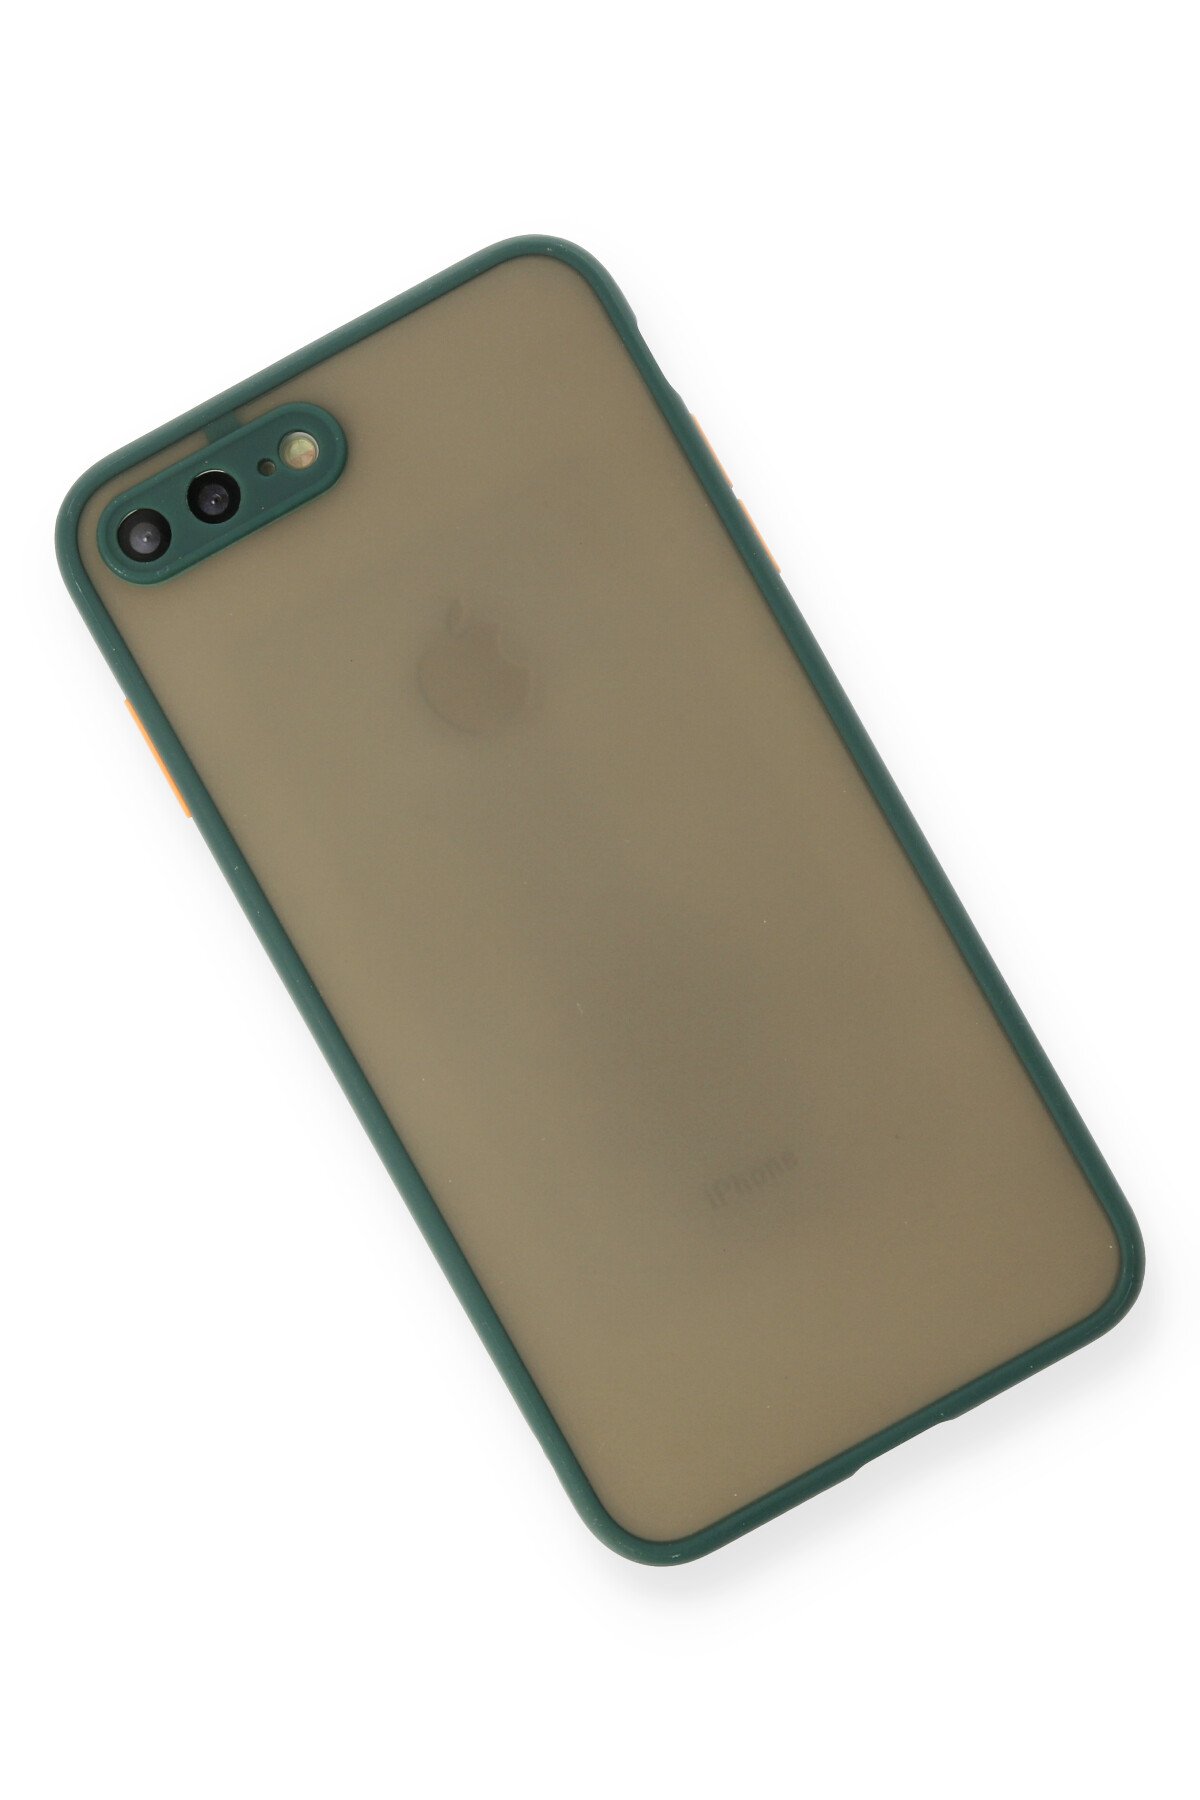 NewFace Newface iPhone 8 Plus Kılıf Montreal Silikon Kapak - Yeşil